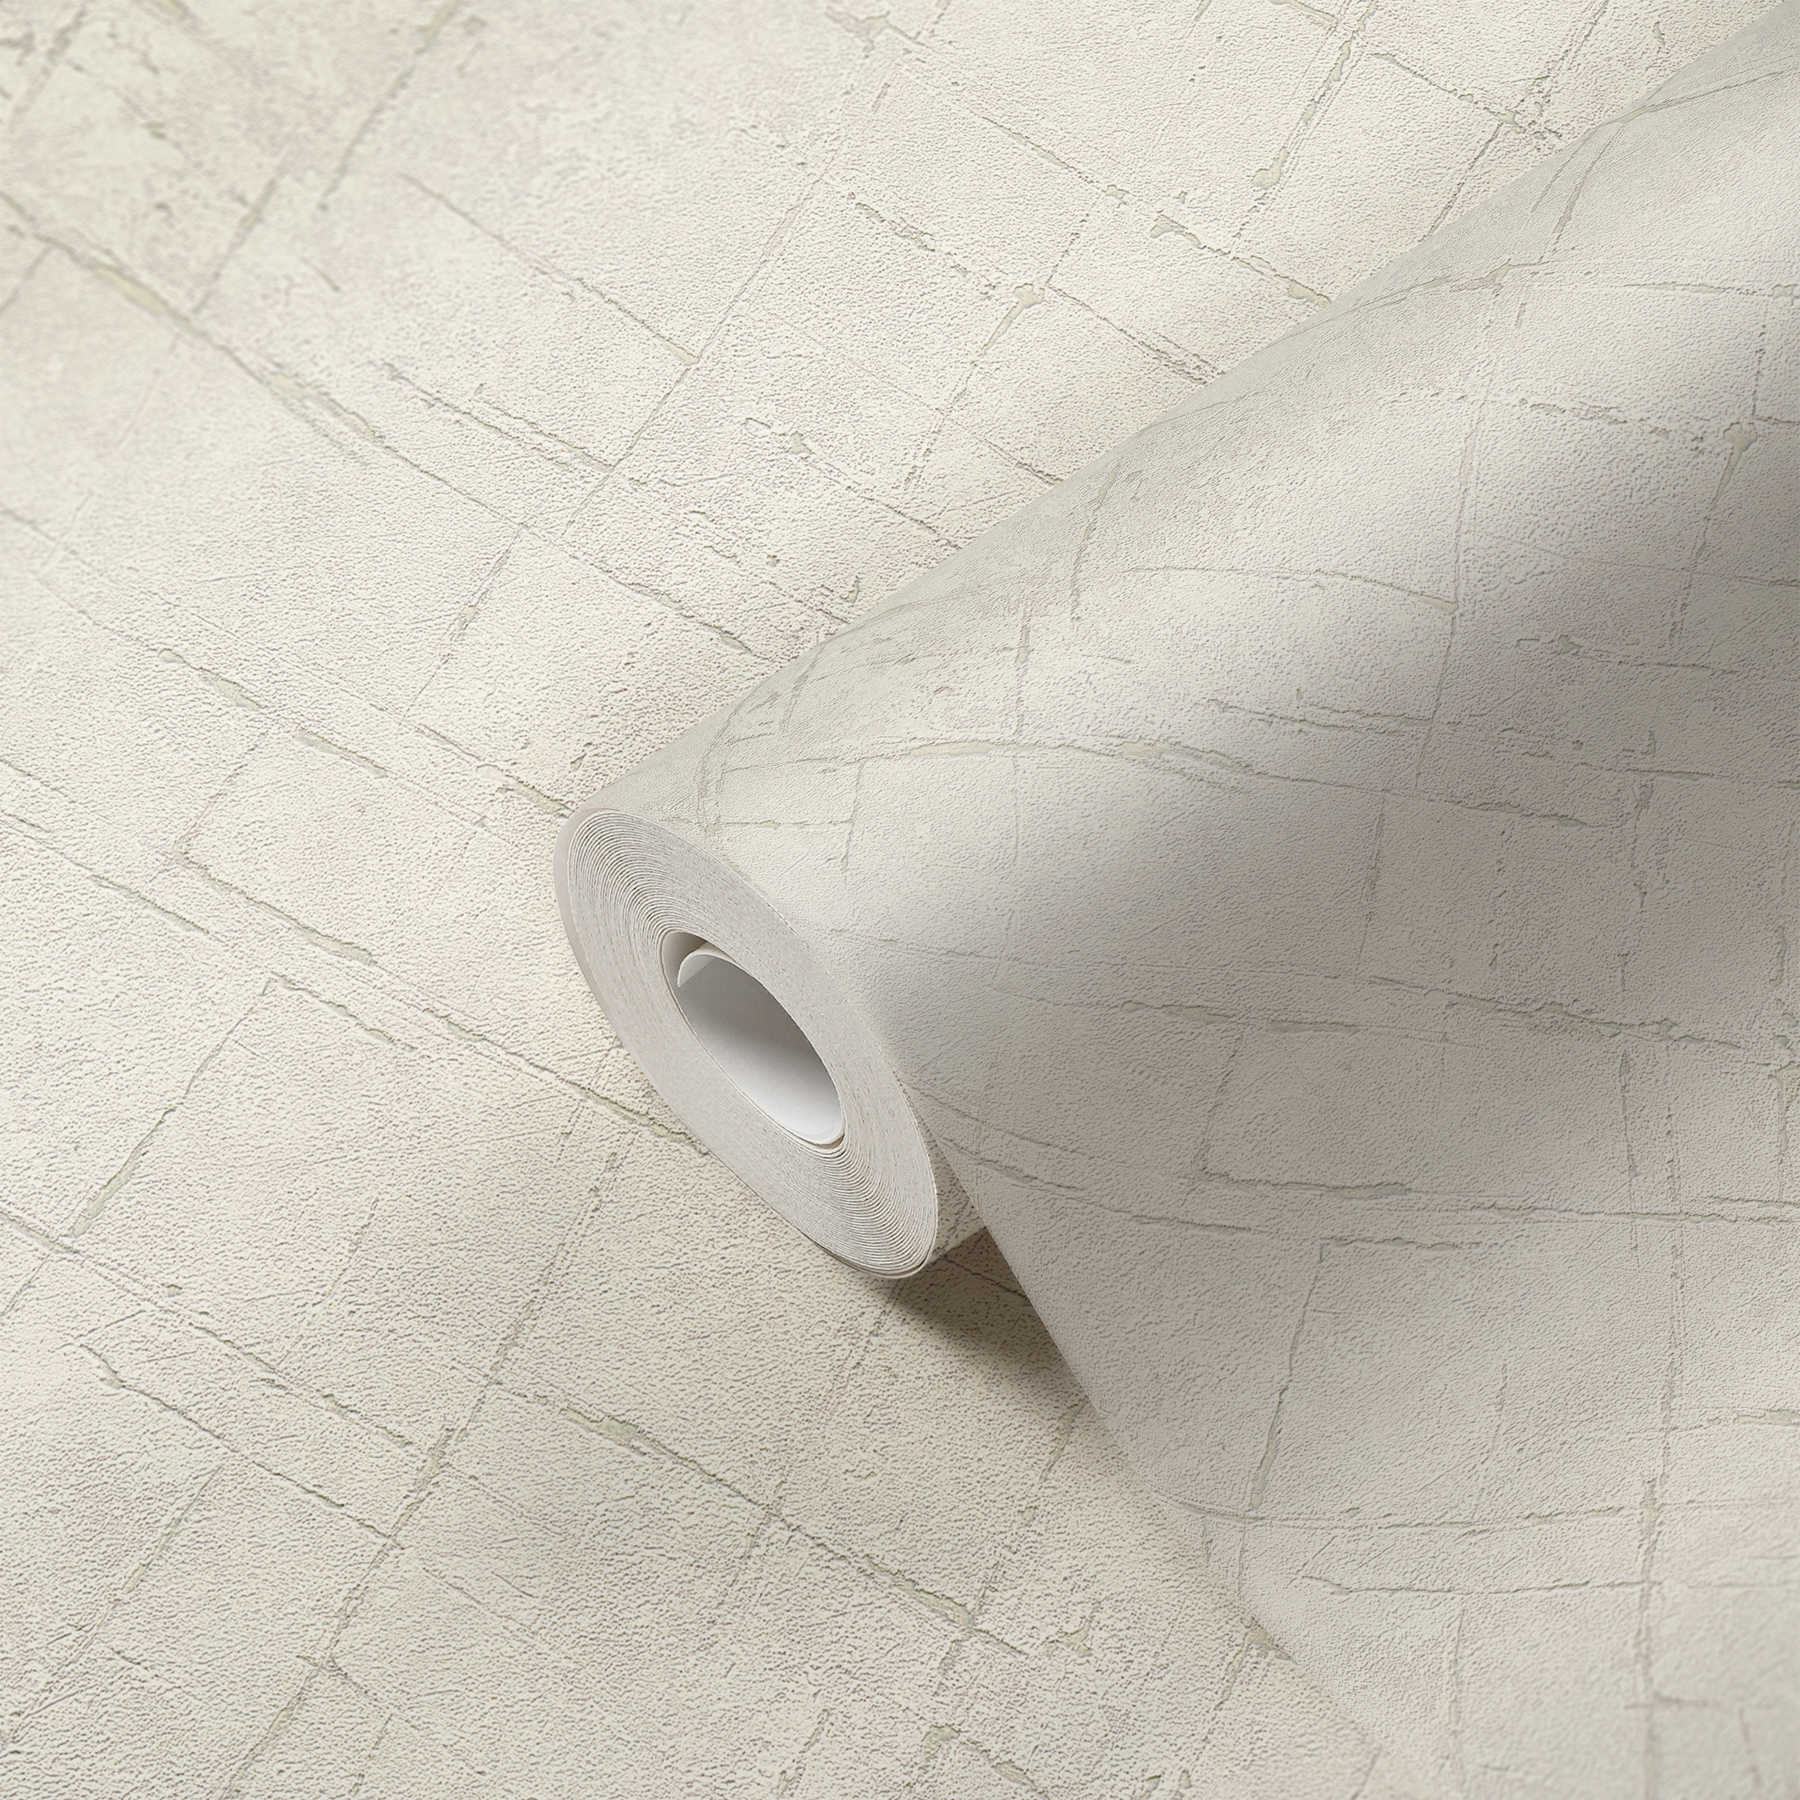             Vliesbehang gipslook in gebruikte look - wit, grijs
        